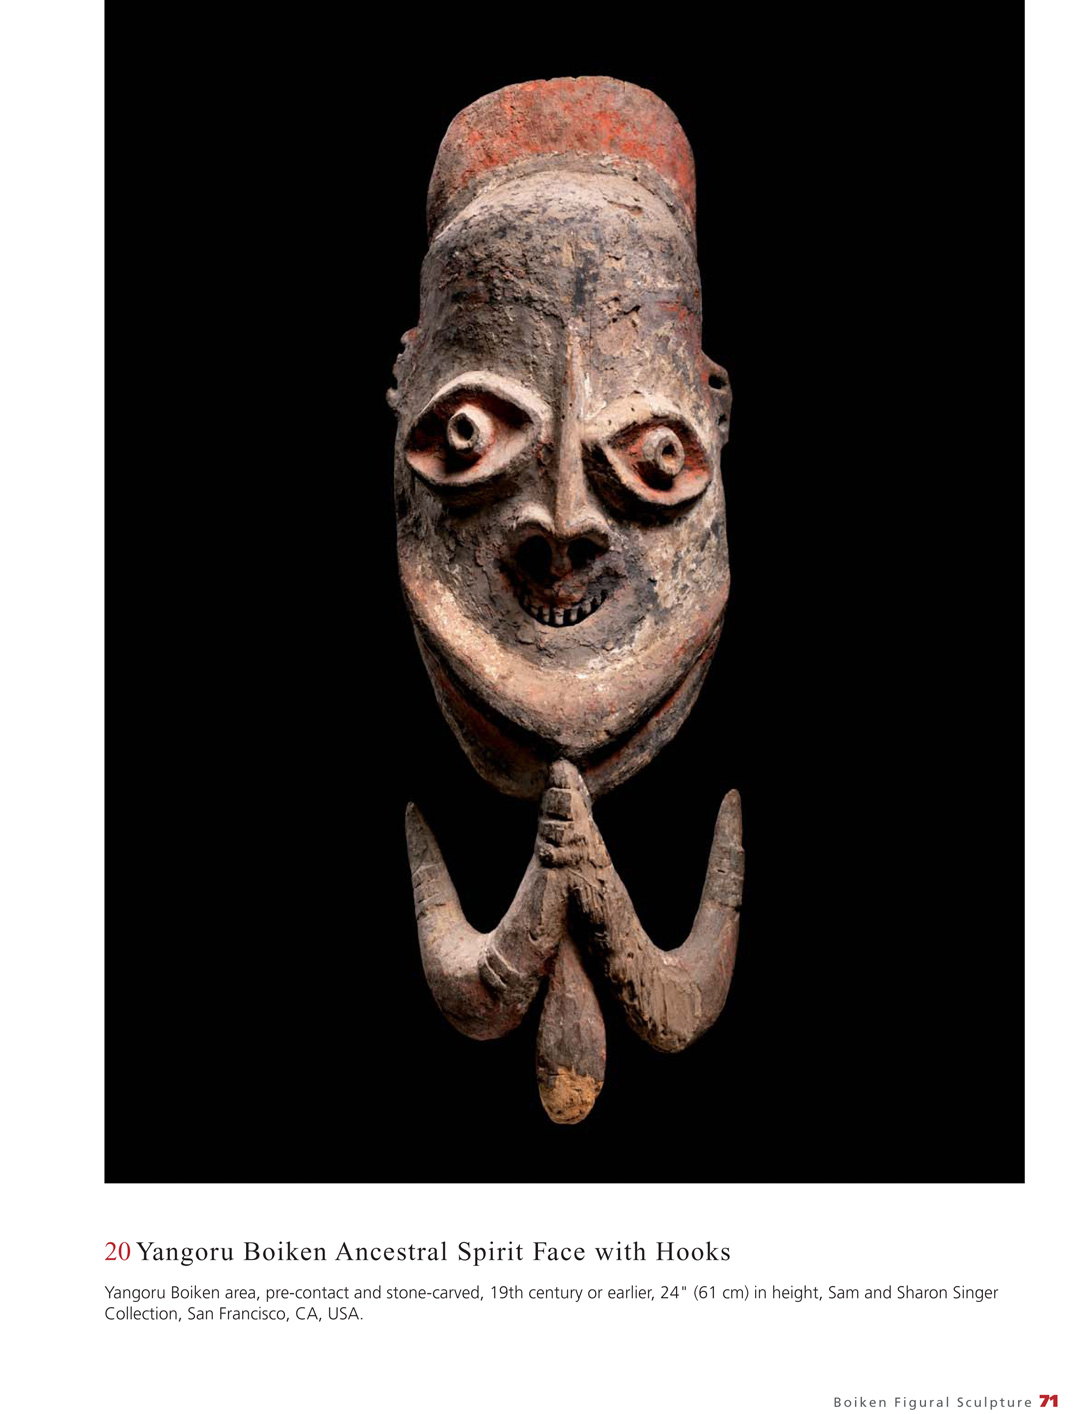 Art of the Boiken New Guinea Oceanic Art